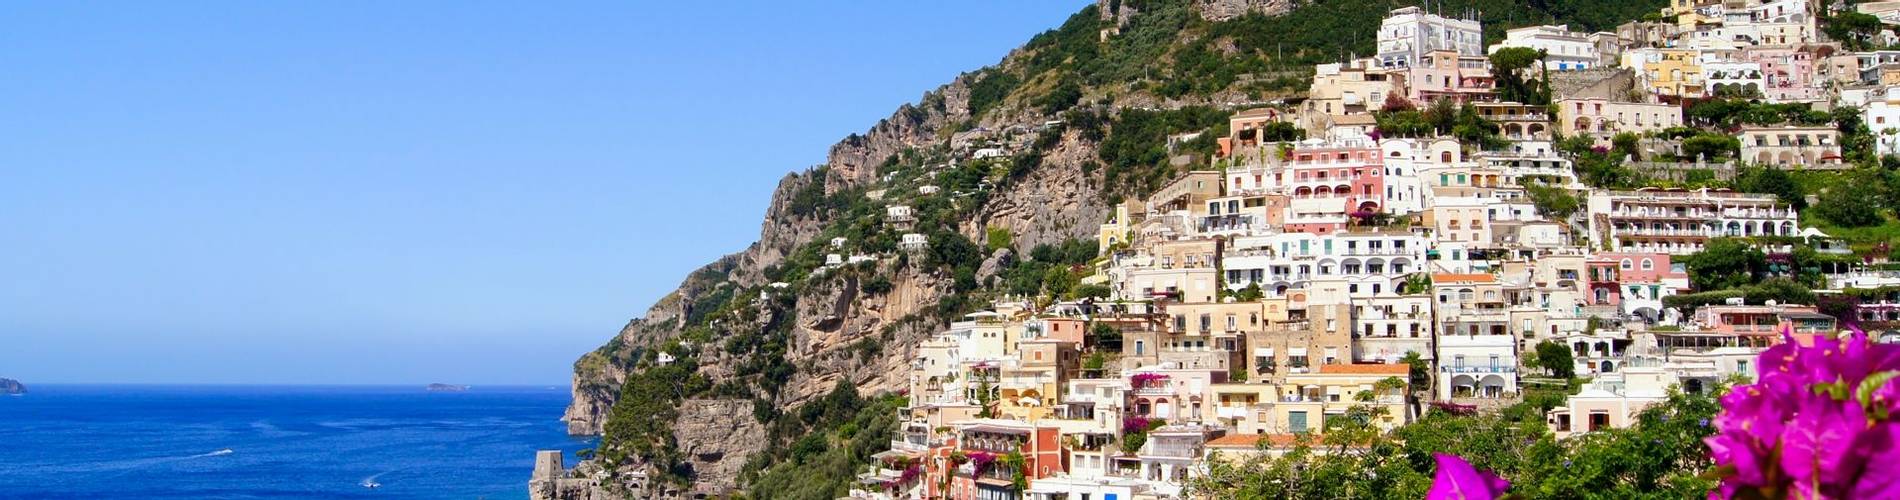 LT Amalfi Coast.jpg